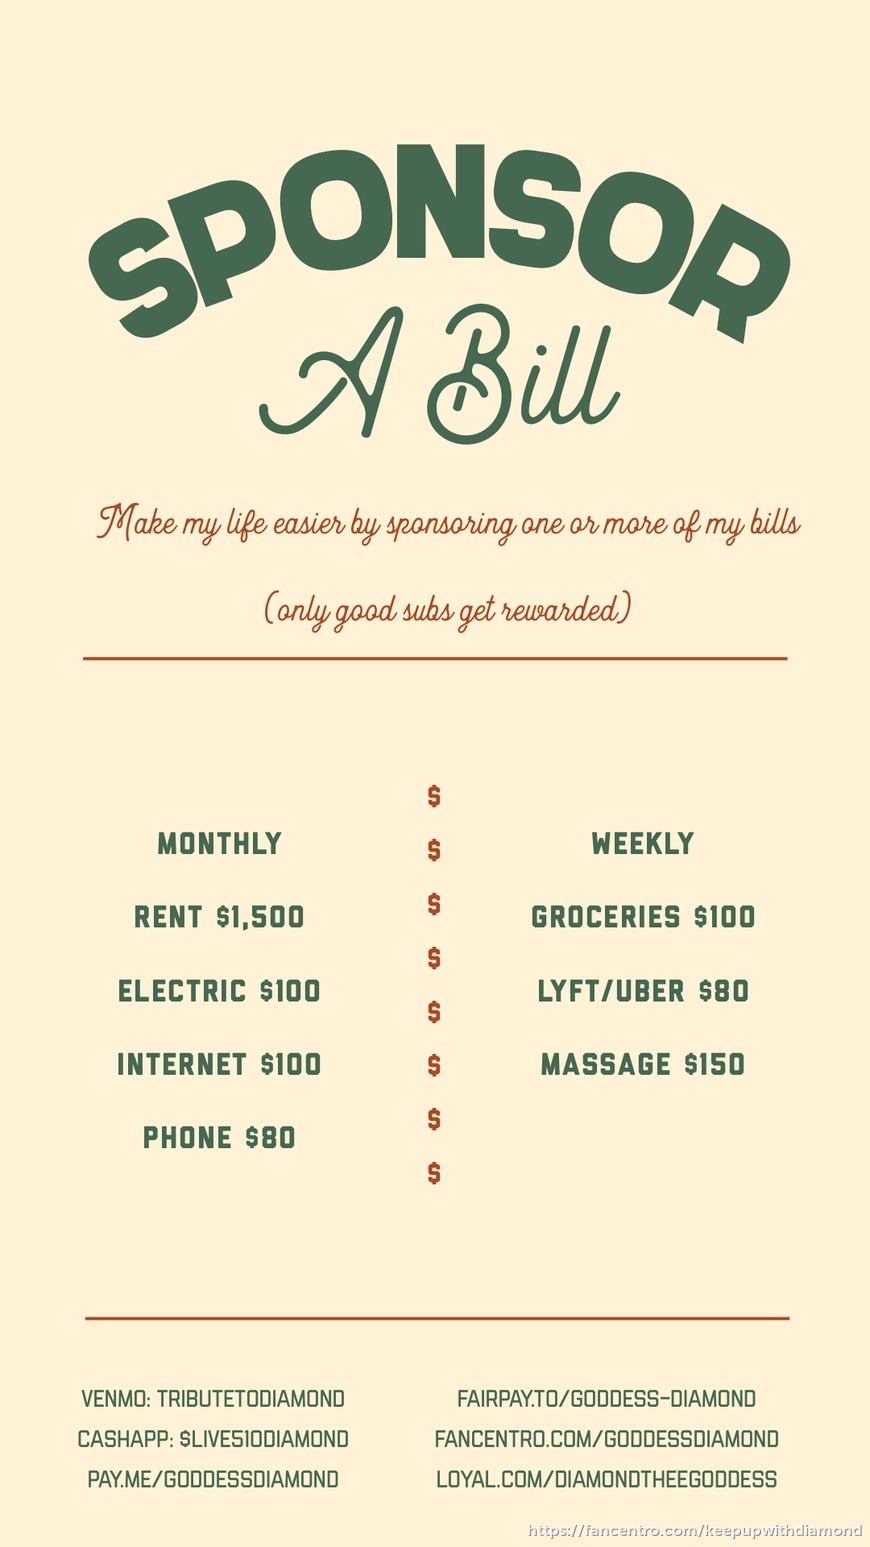 Sponsor a bill